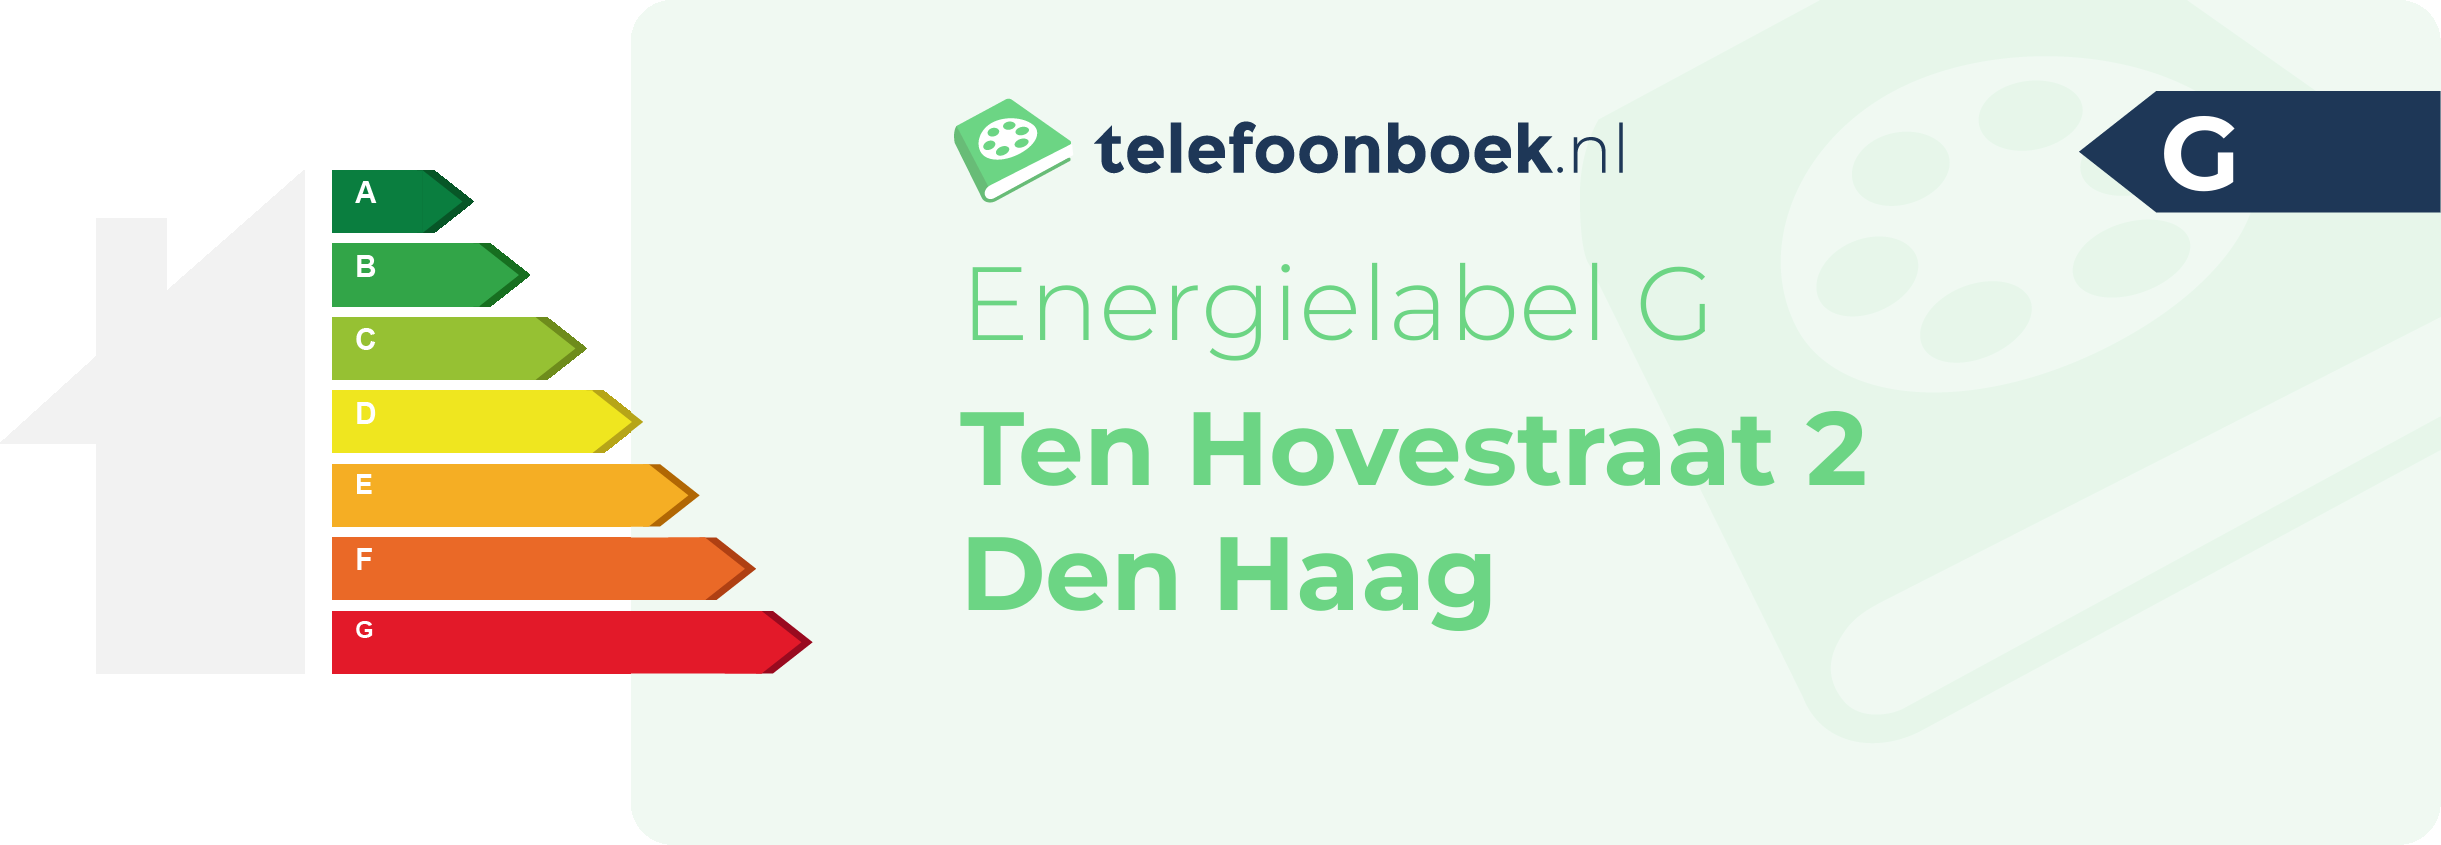 Energielabel Ten Hovestraat 2 Den Haag